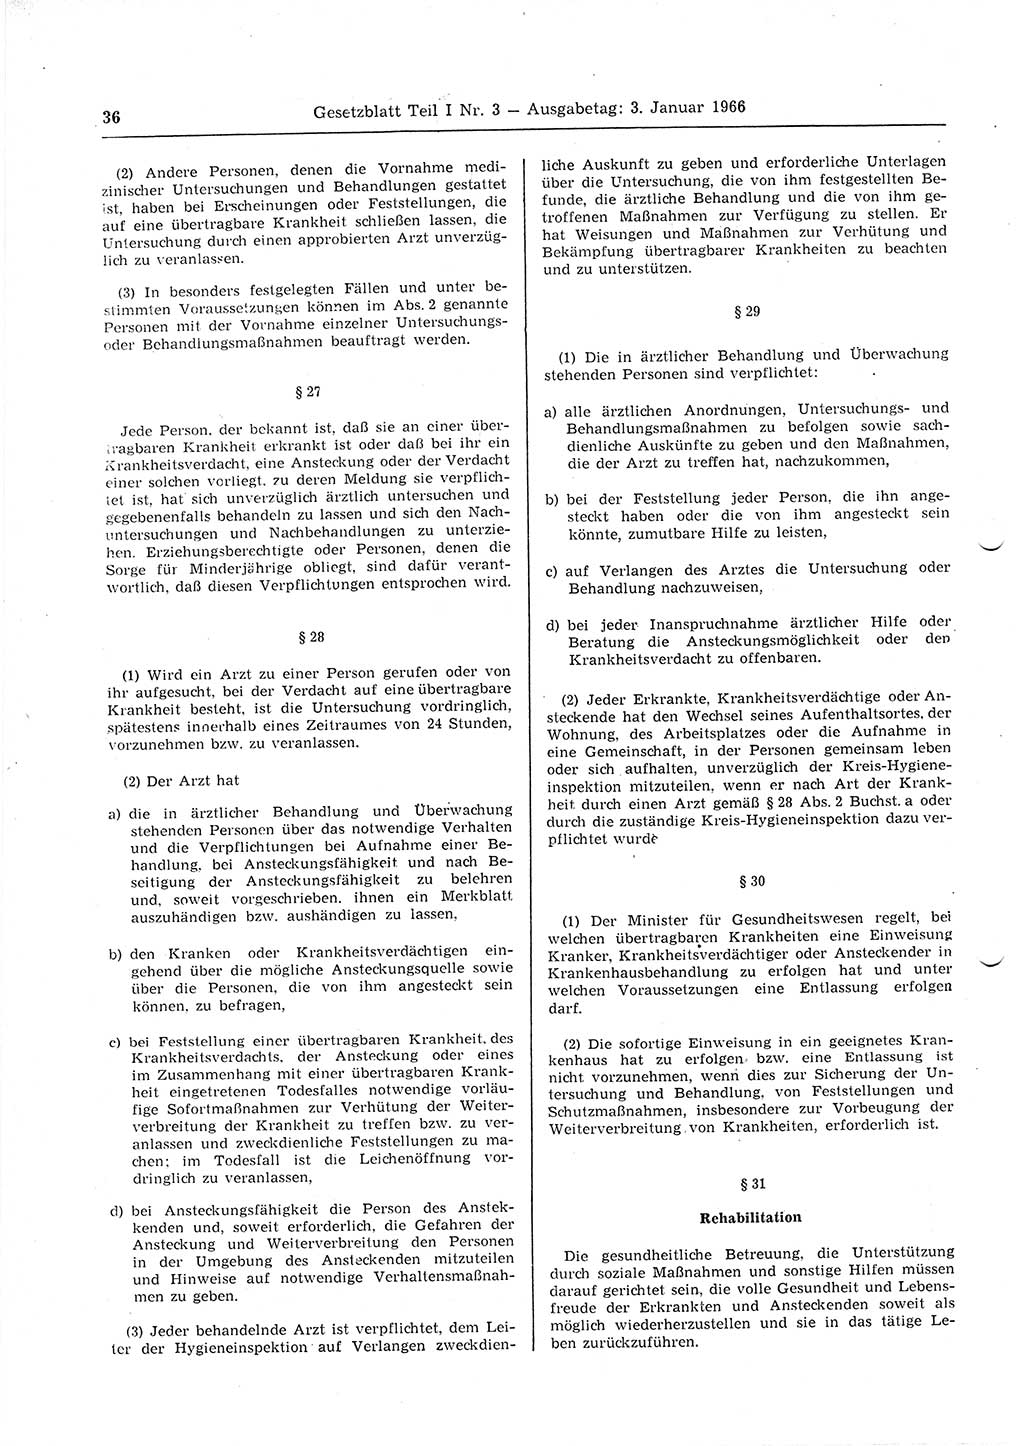 Gesetzblatt (GBl.) der Deutschen Demokratischen Republik (DDR) Teil Ⅰ 1966, Seite 36 (GBl. DDR Ⅰ 1966, S. 36)